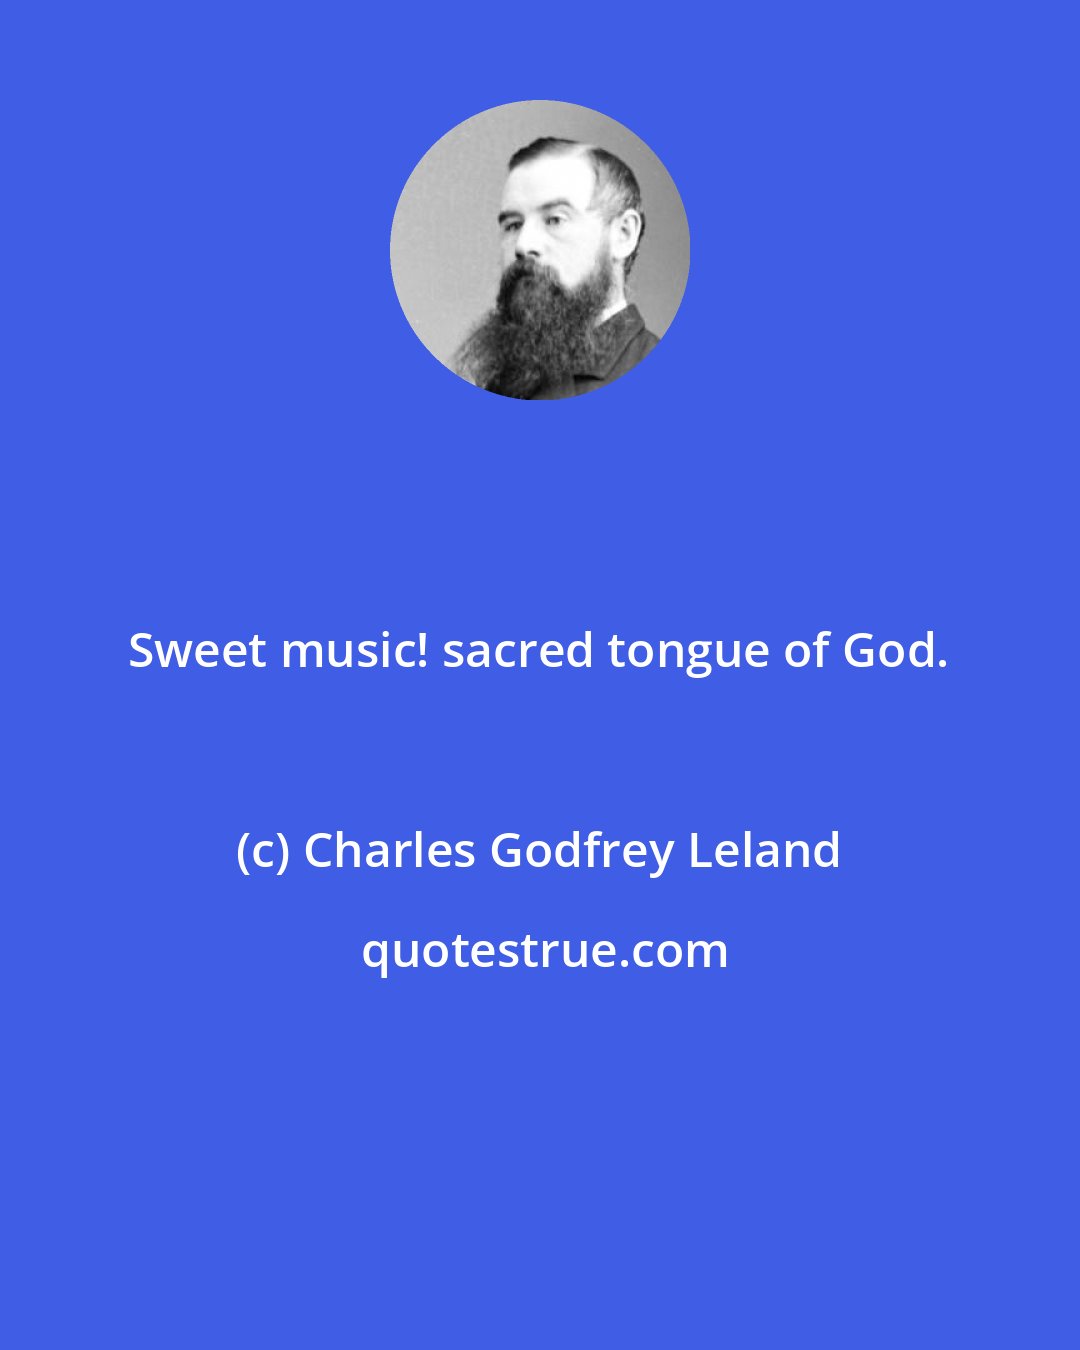 Charles Godfrey Leland: Sweet music! sacred tongue of God.